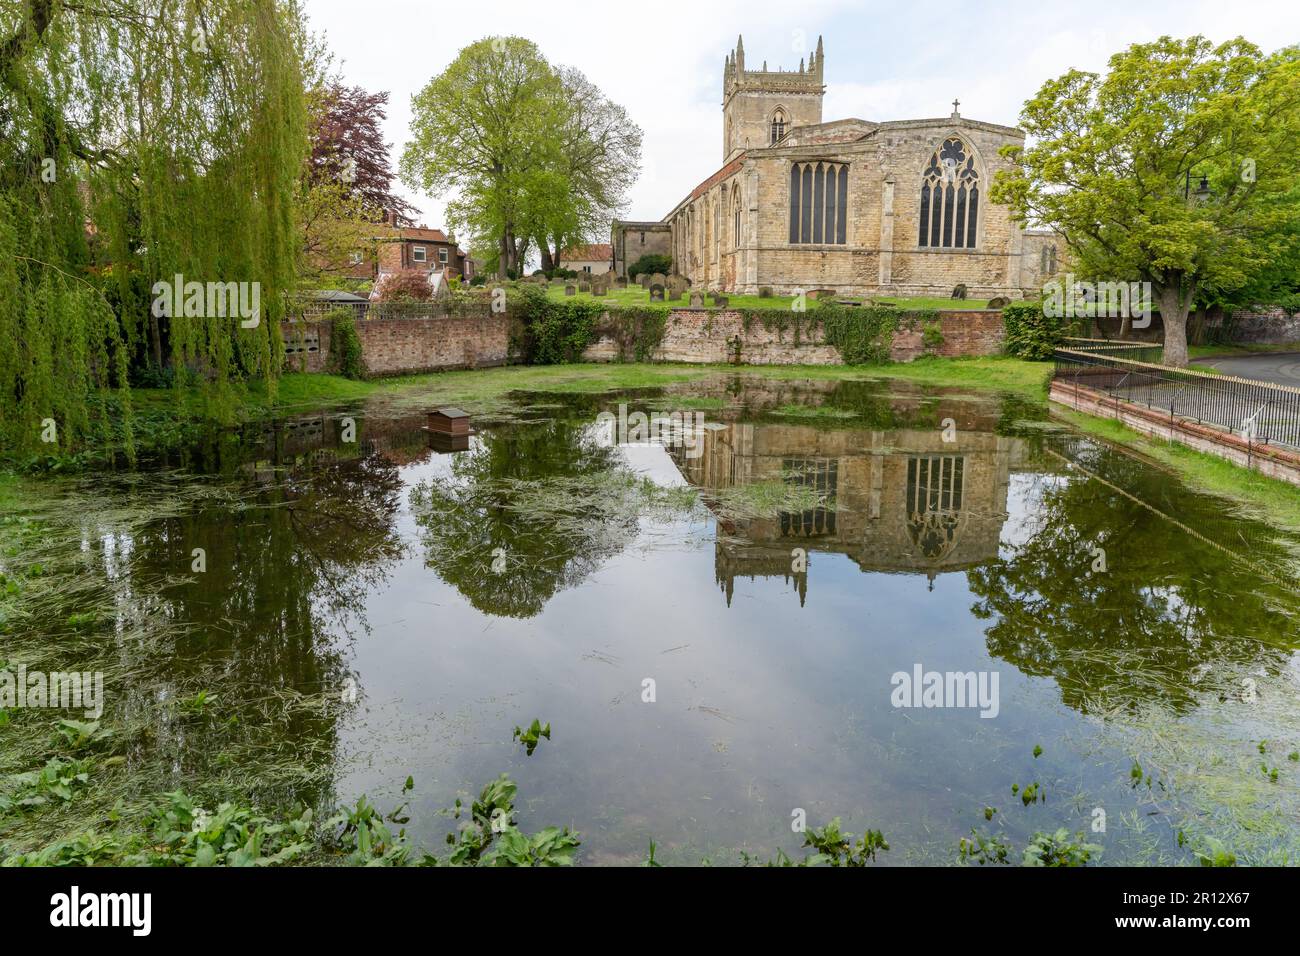 The Beck - un étang artésien alimenté par une source à Barton-upon-Humber, dans le nord du Lincolnshire, au Royaume-Uni, avec l'église anglicane St Mary derrière. Banque D'Images